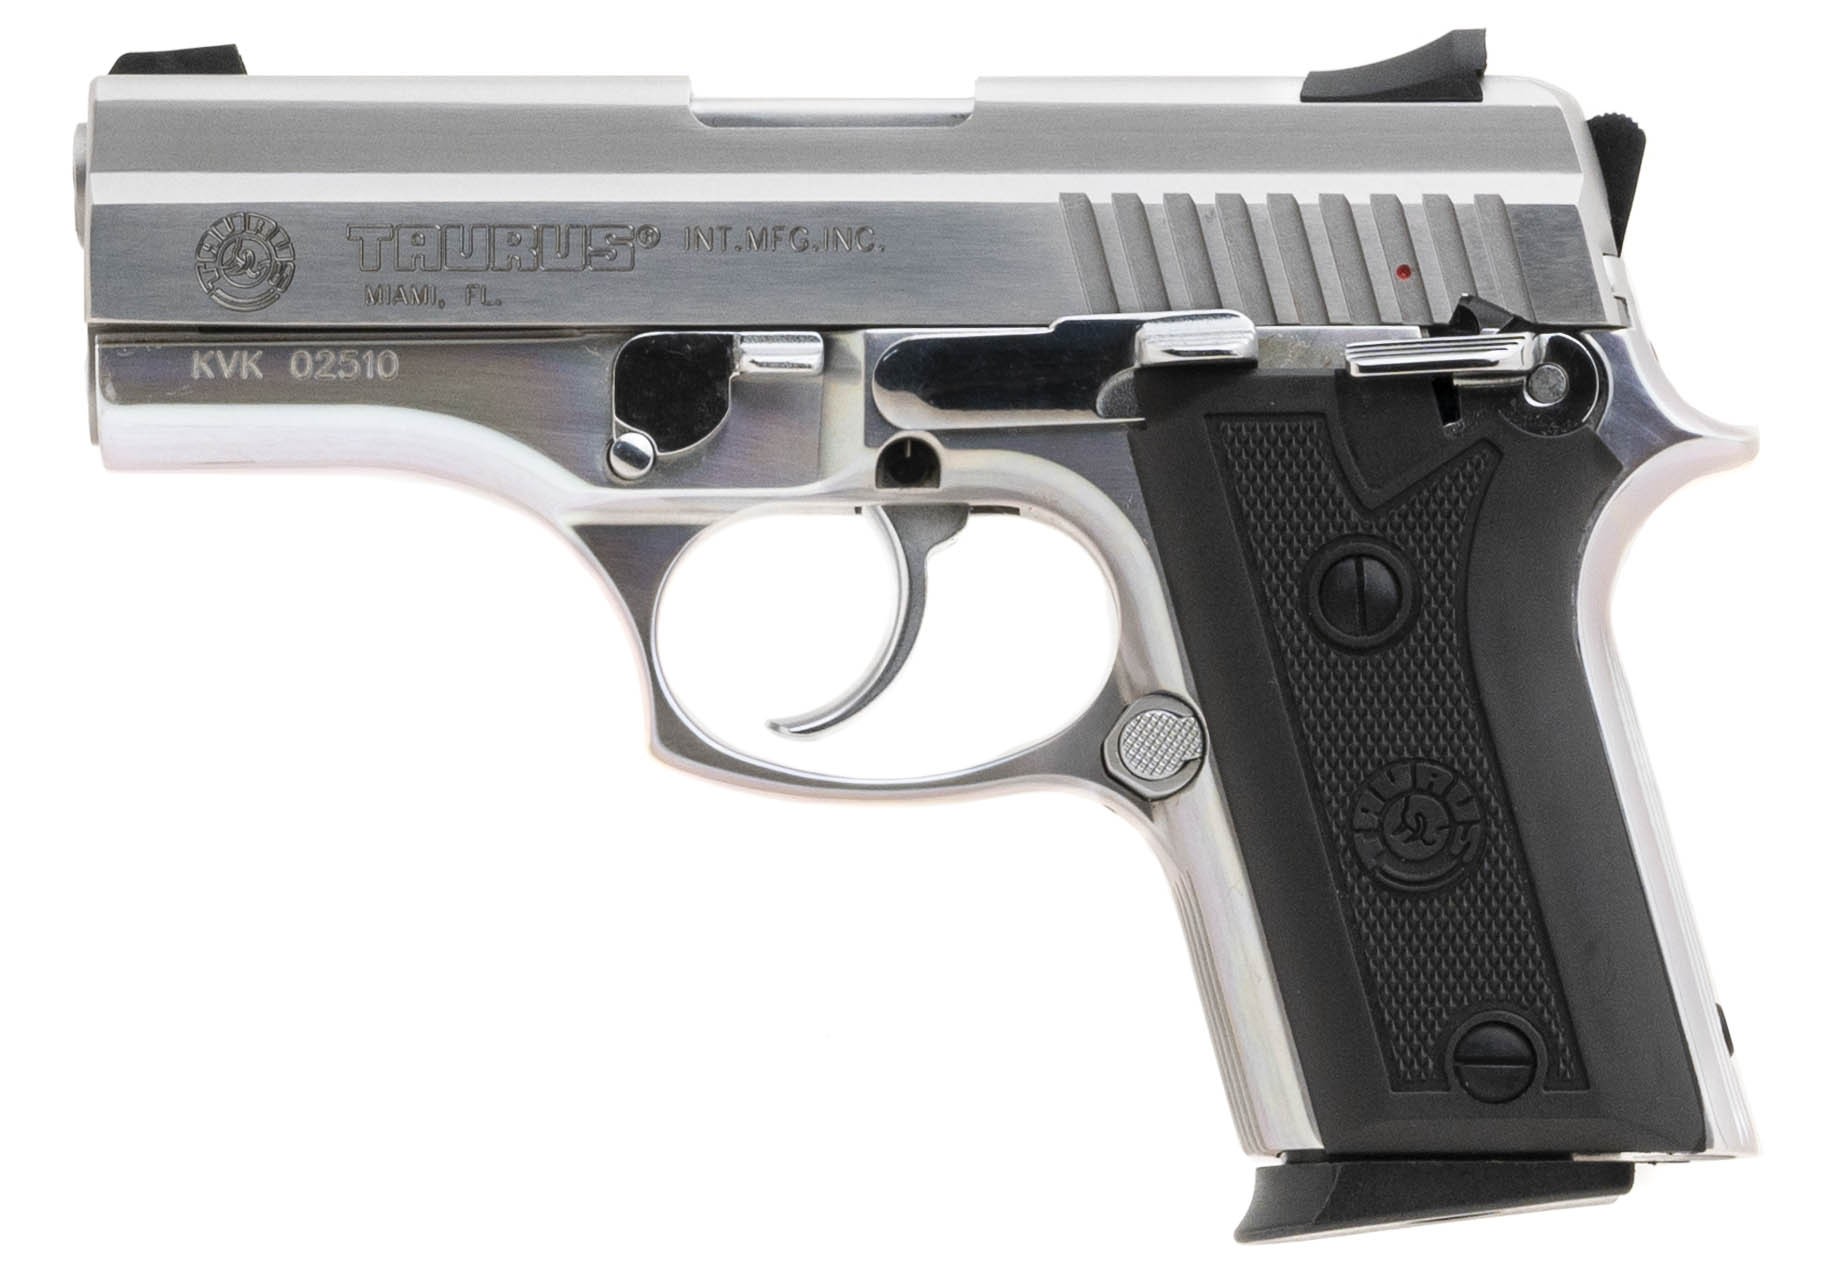 Pistola 938 Cal .380 Inox Fosco - Taurus